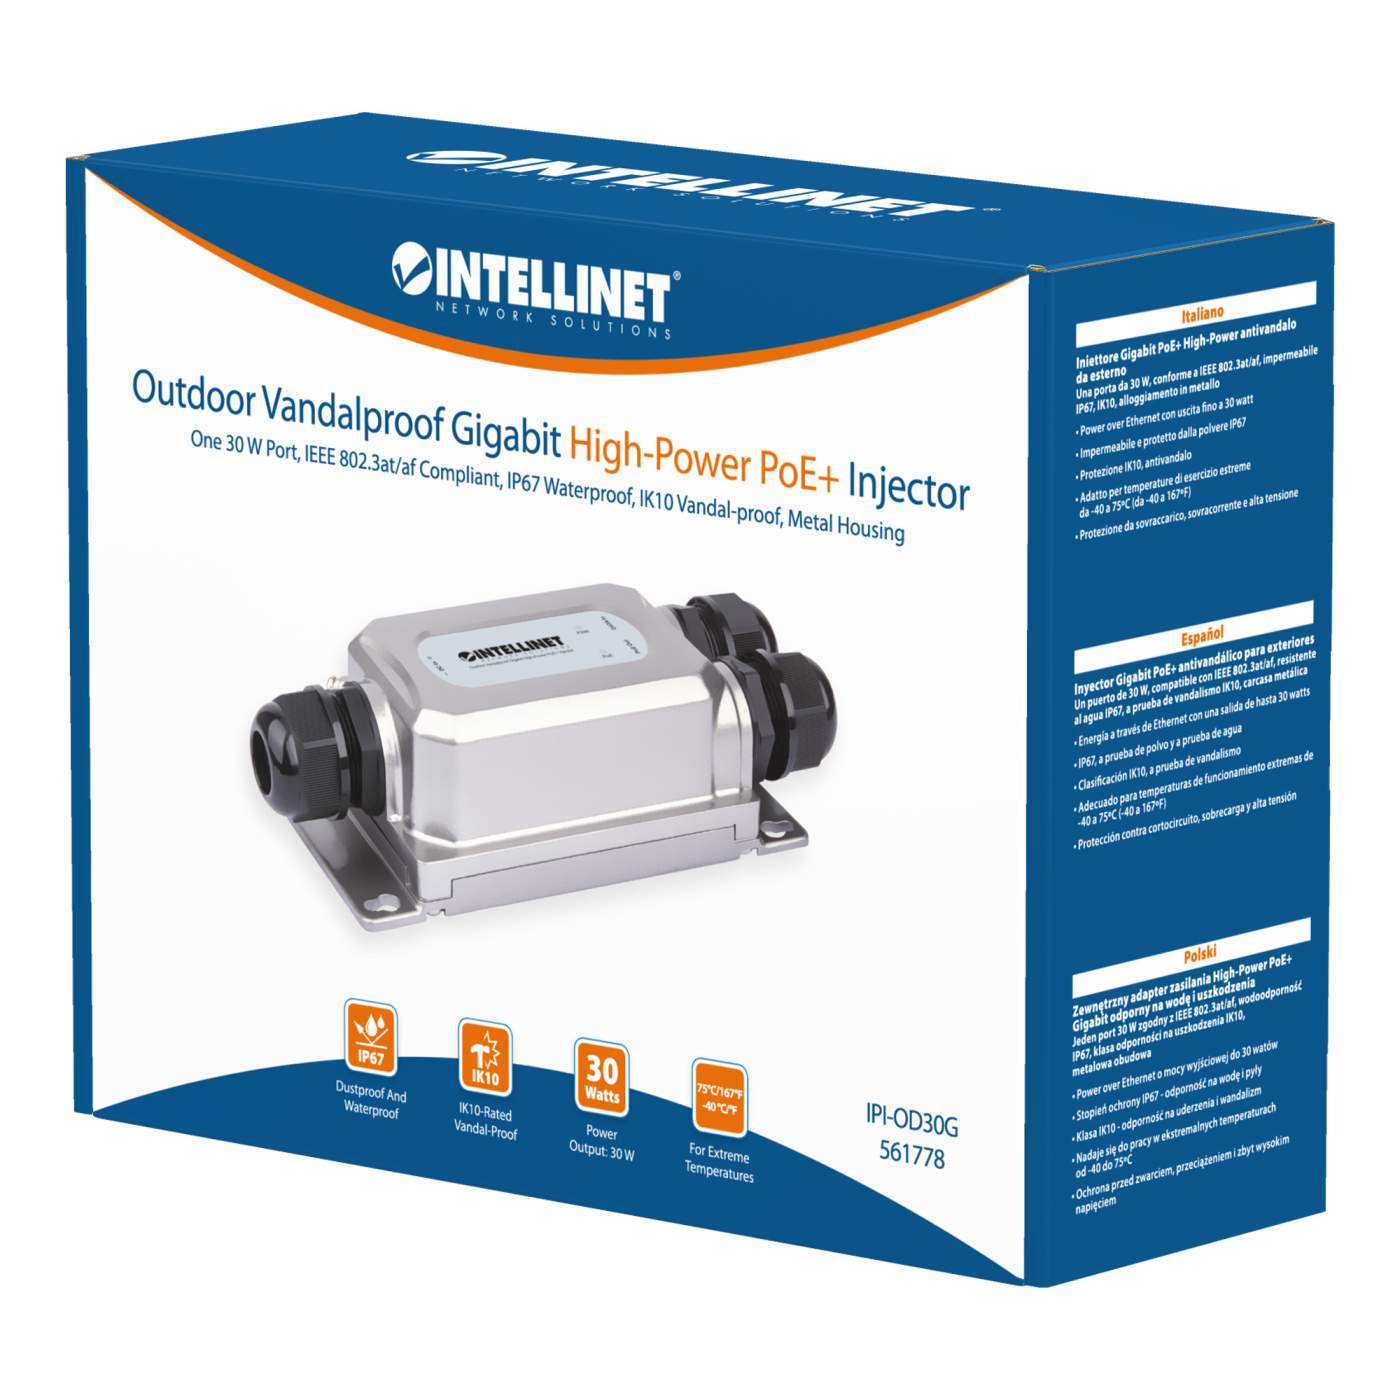 Outdoor Vandalproof Gigabit High-Power PoE+ Injector Packaging Image 2